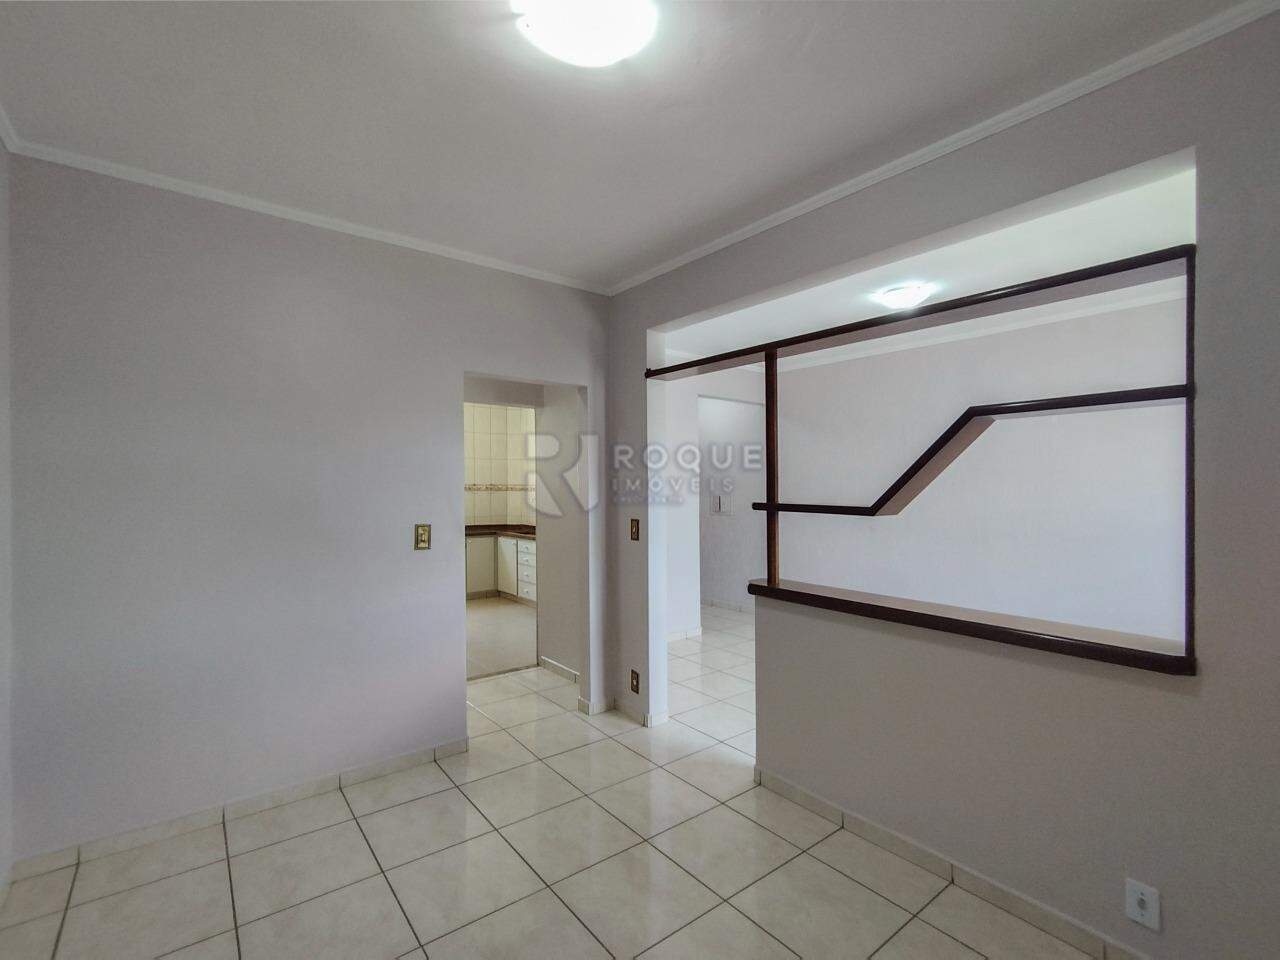 Apartamento para aluguel no bairro Cidade Jardim: Sala 2